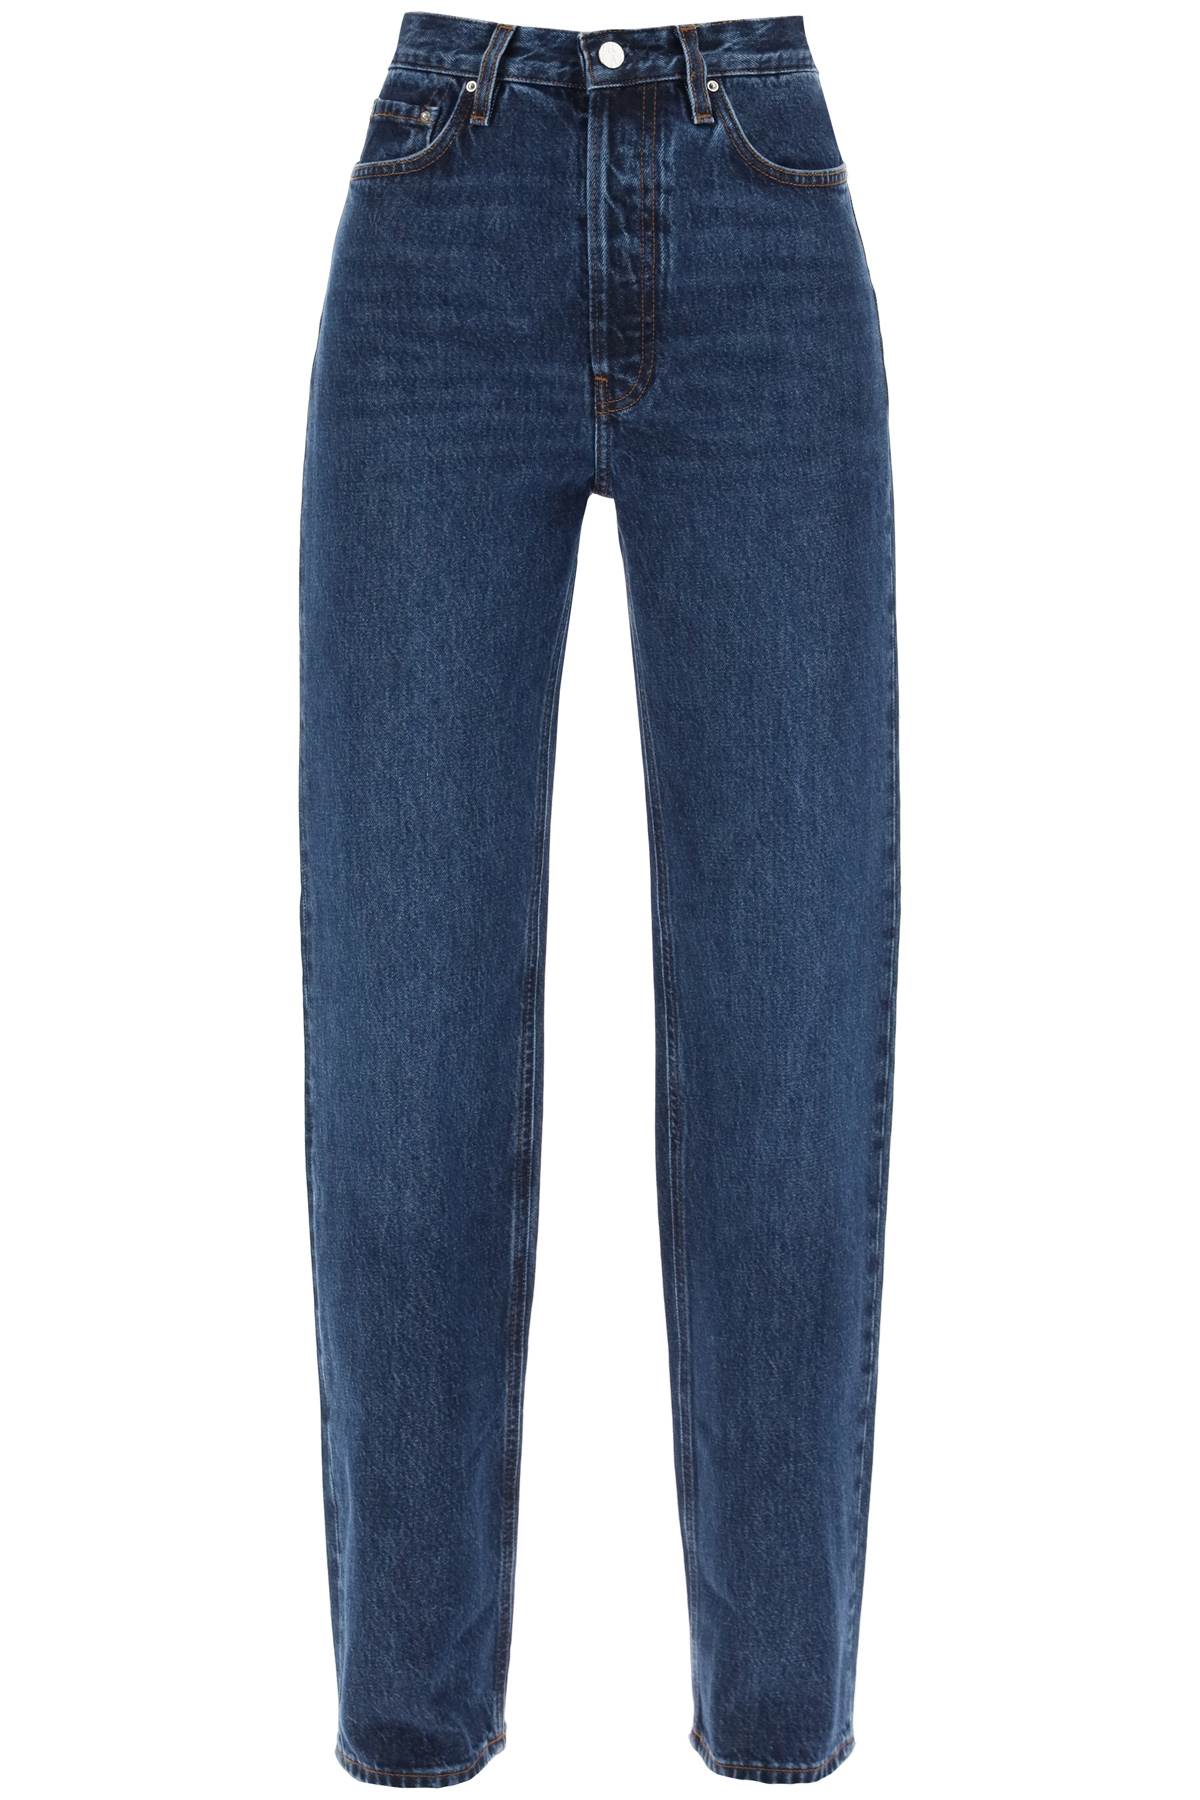 TOTEME organic denim classic cut jeans